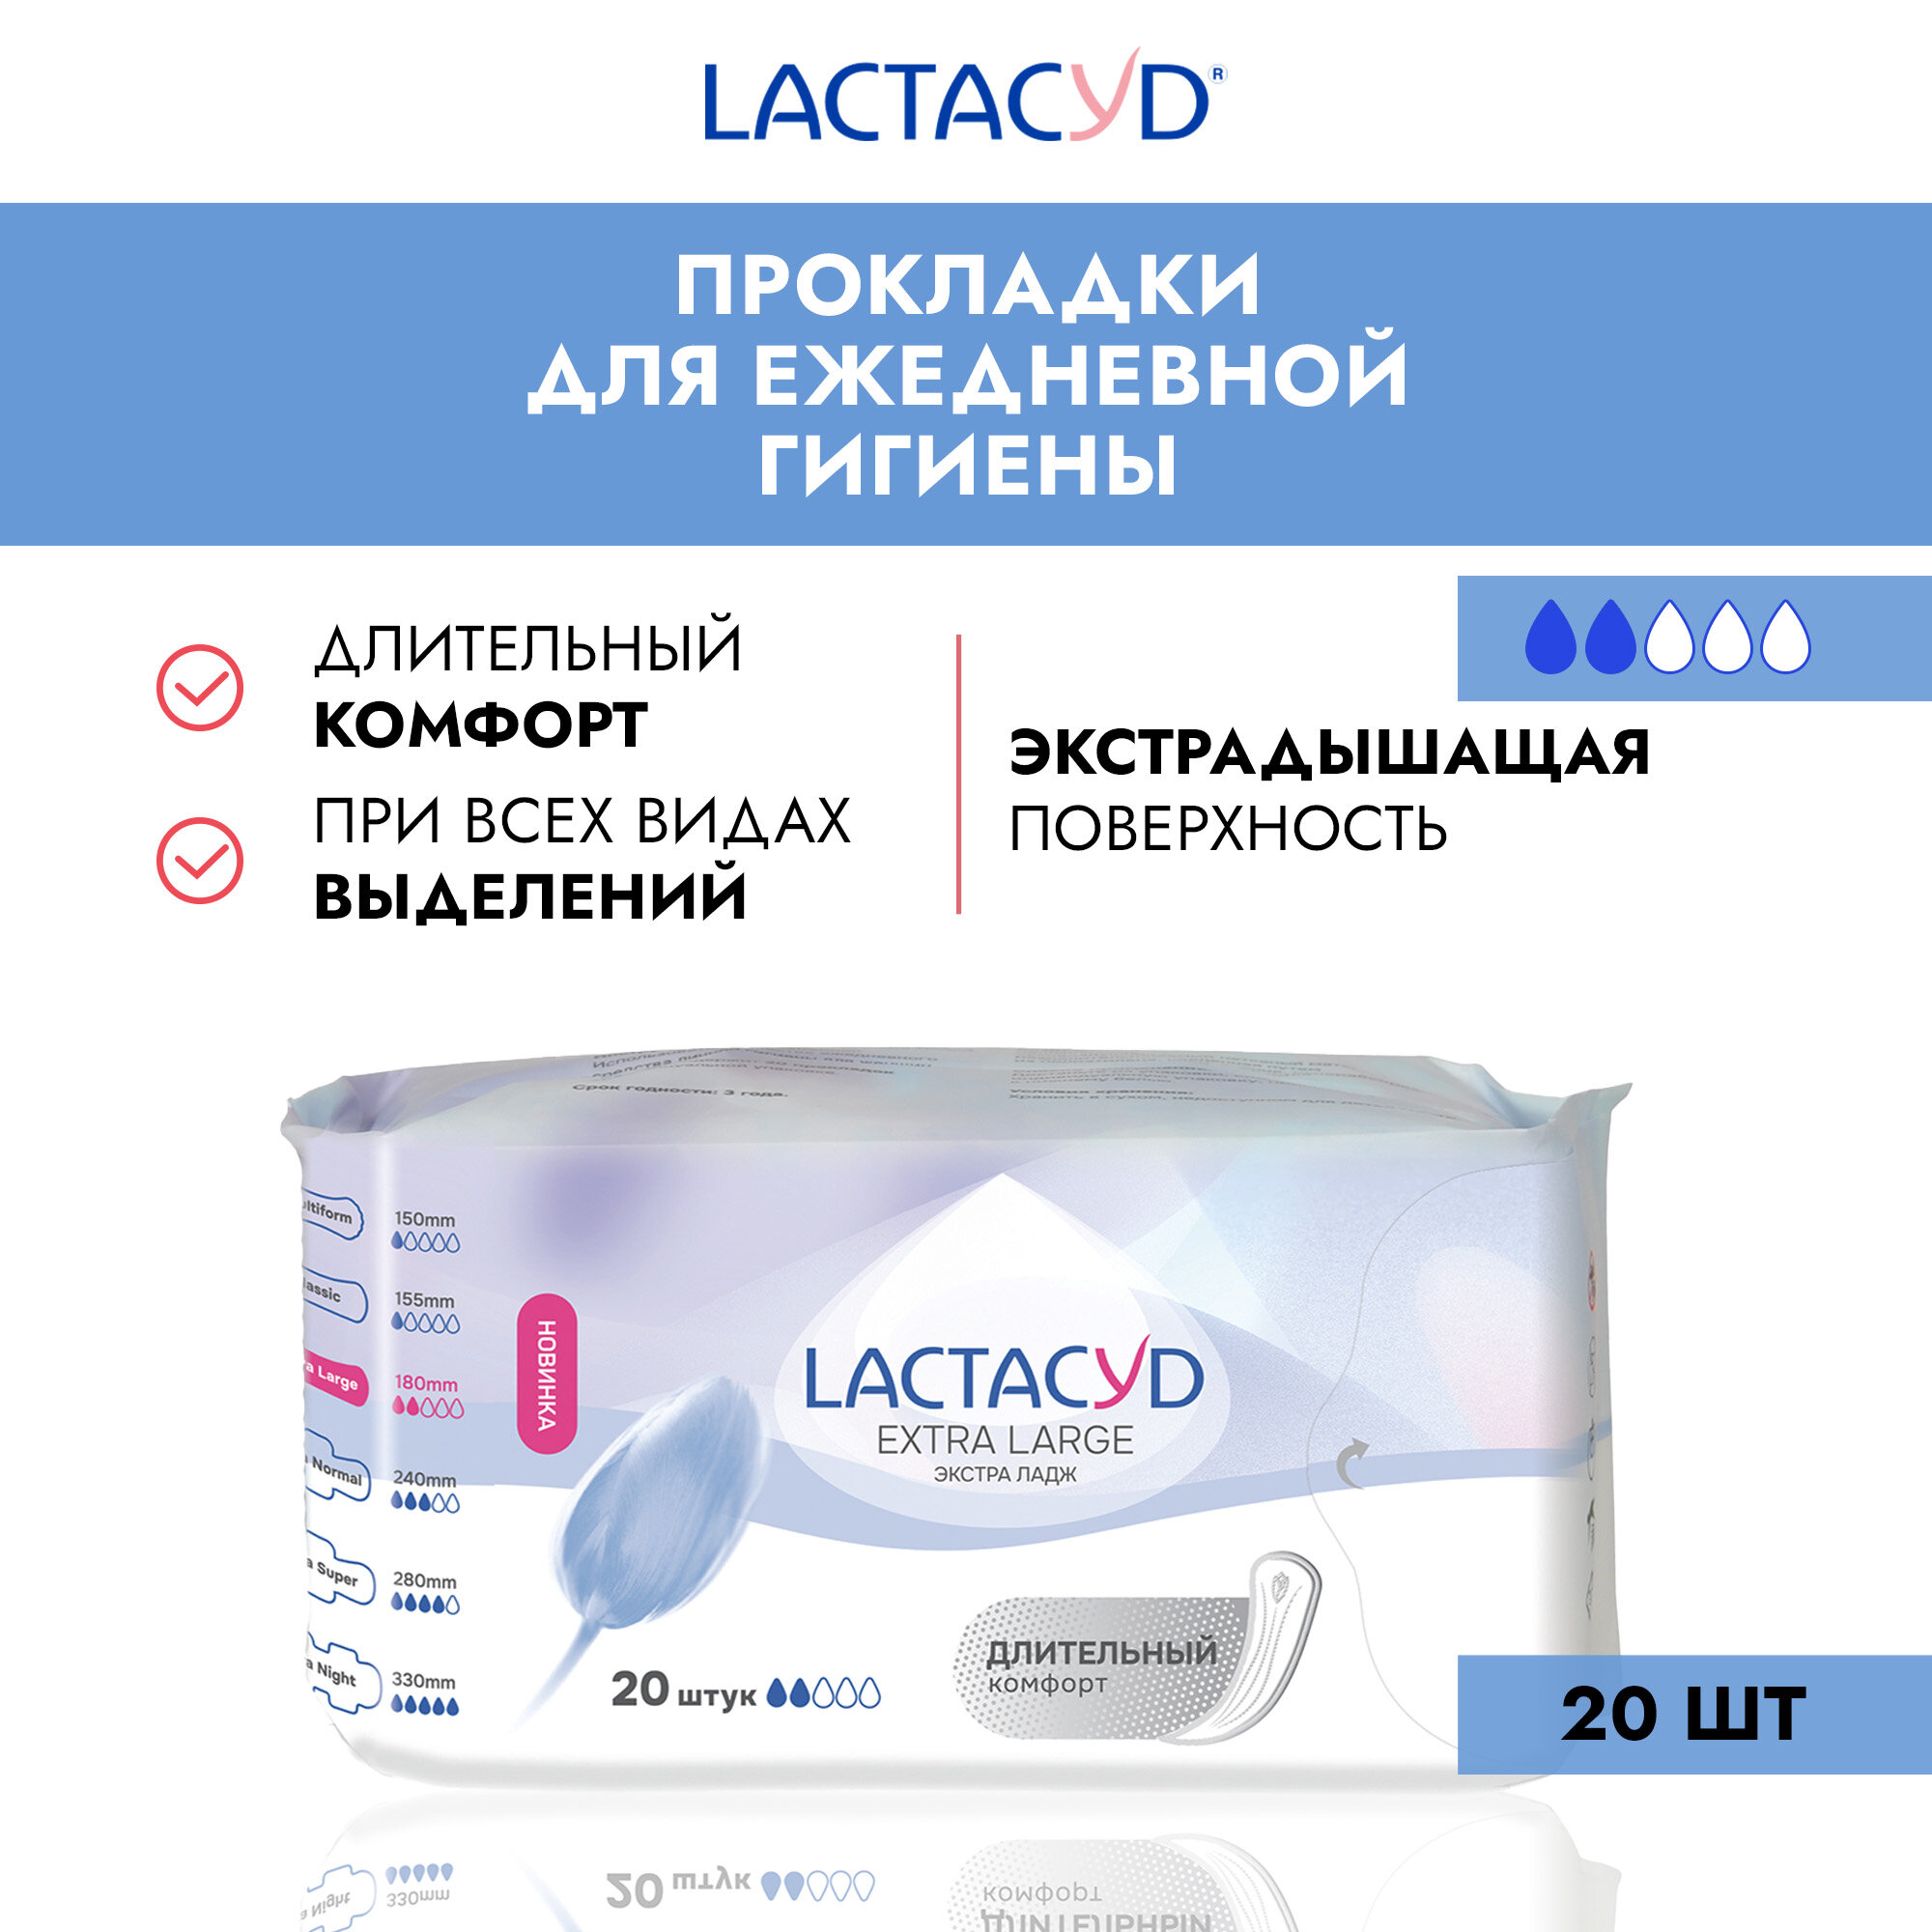 Lactacyd Прокладки женские впитывающие для ежедневного использования Extra Large (Normal), 20 шт